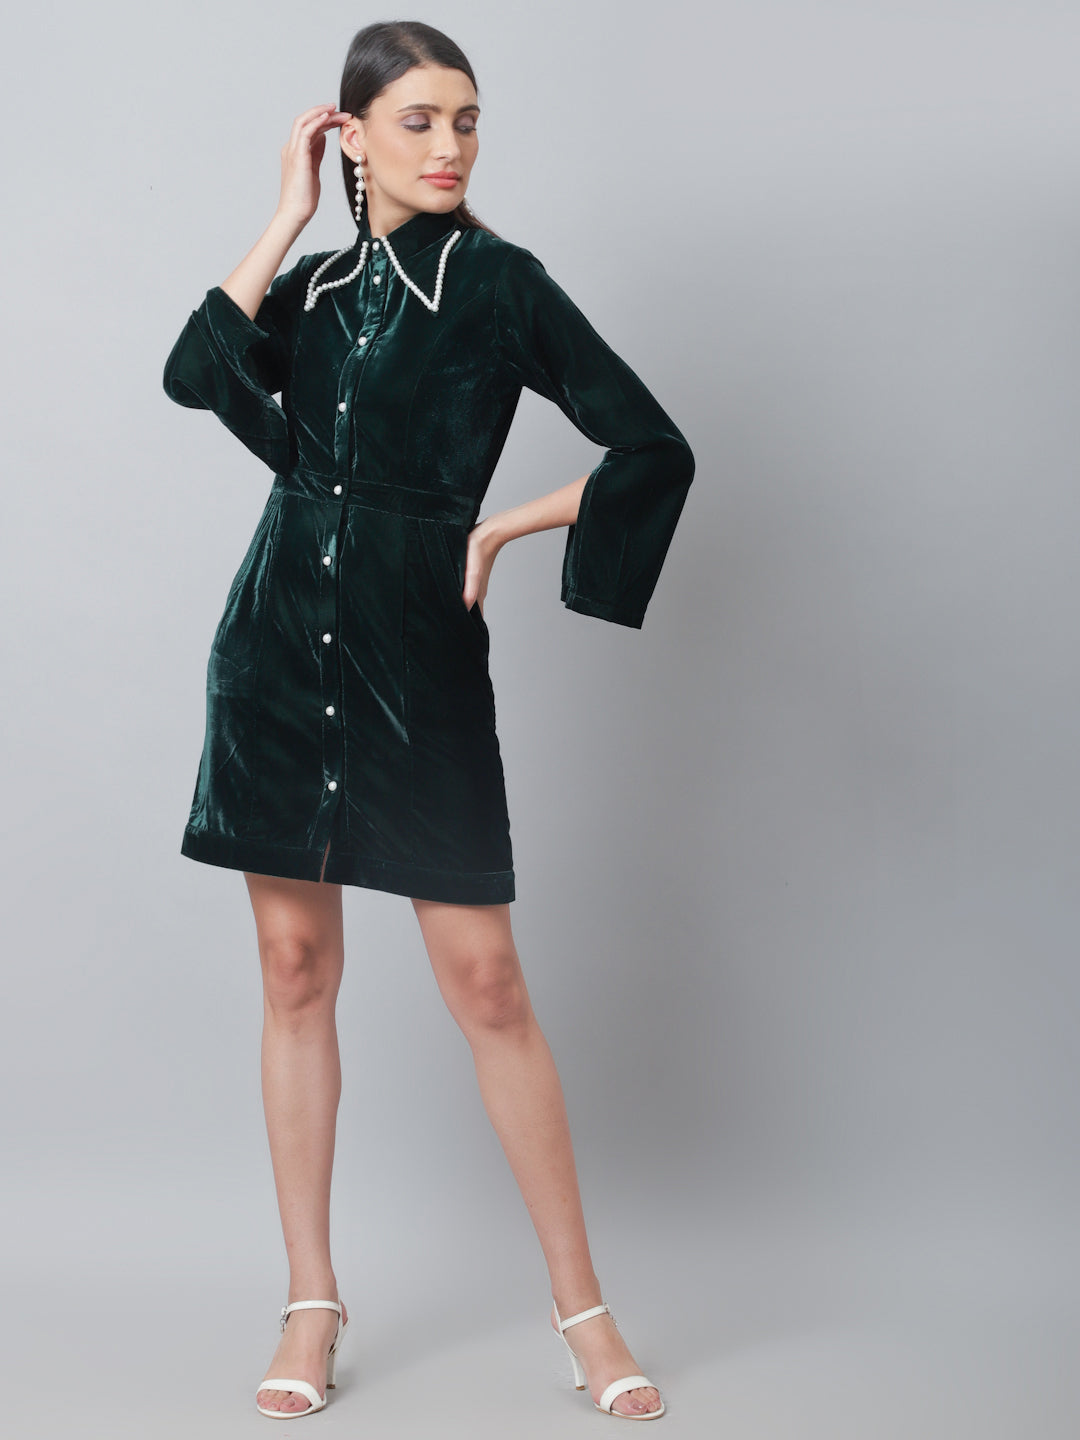 Blanc9 Pearl Green Velvet Dress-B9DR130